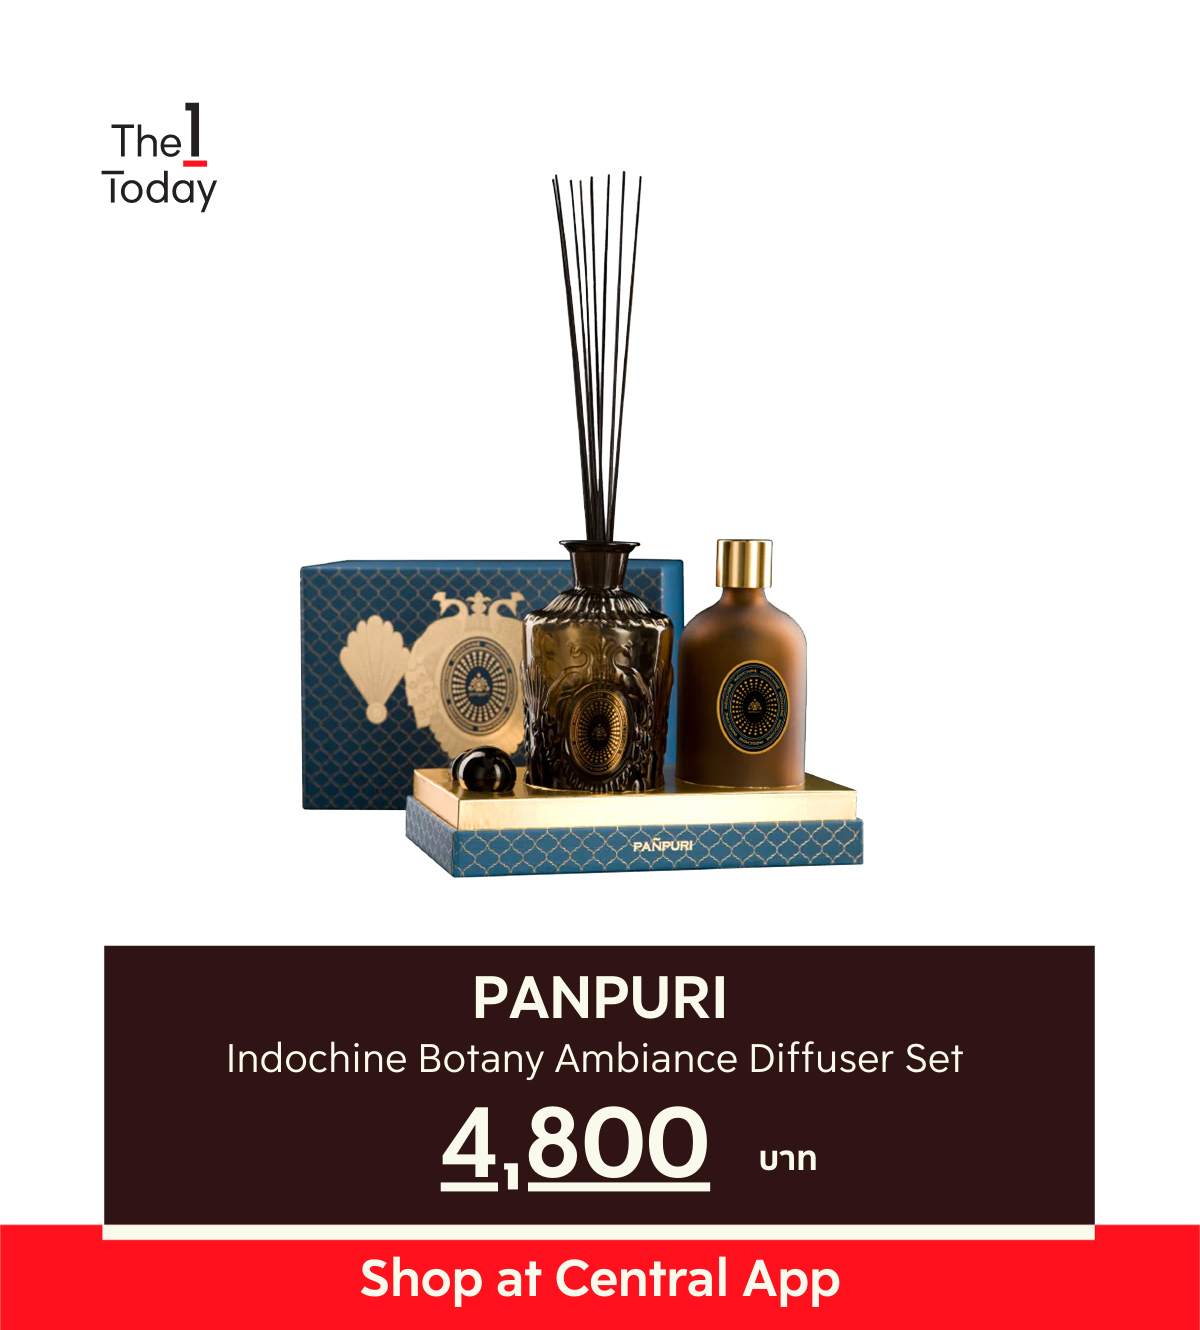 กลิ่นหอมไล่ยุง ไล่ยุงด้วยกลิ่นตะไคร้หอม Panpuri Indochine Botany Ambiance Diffuser Set 